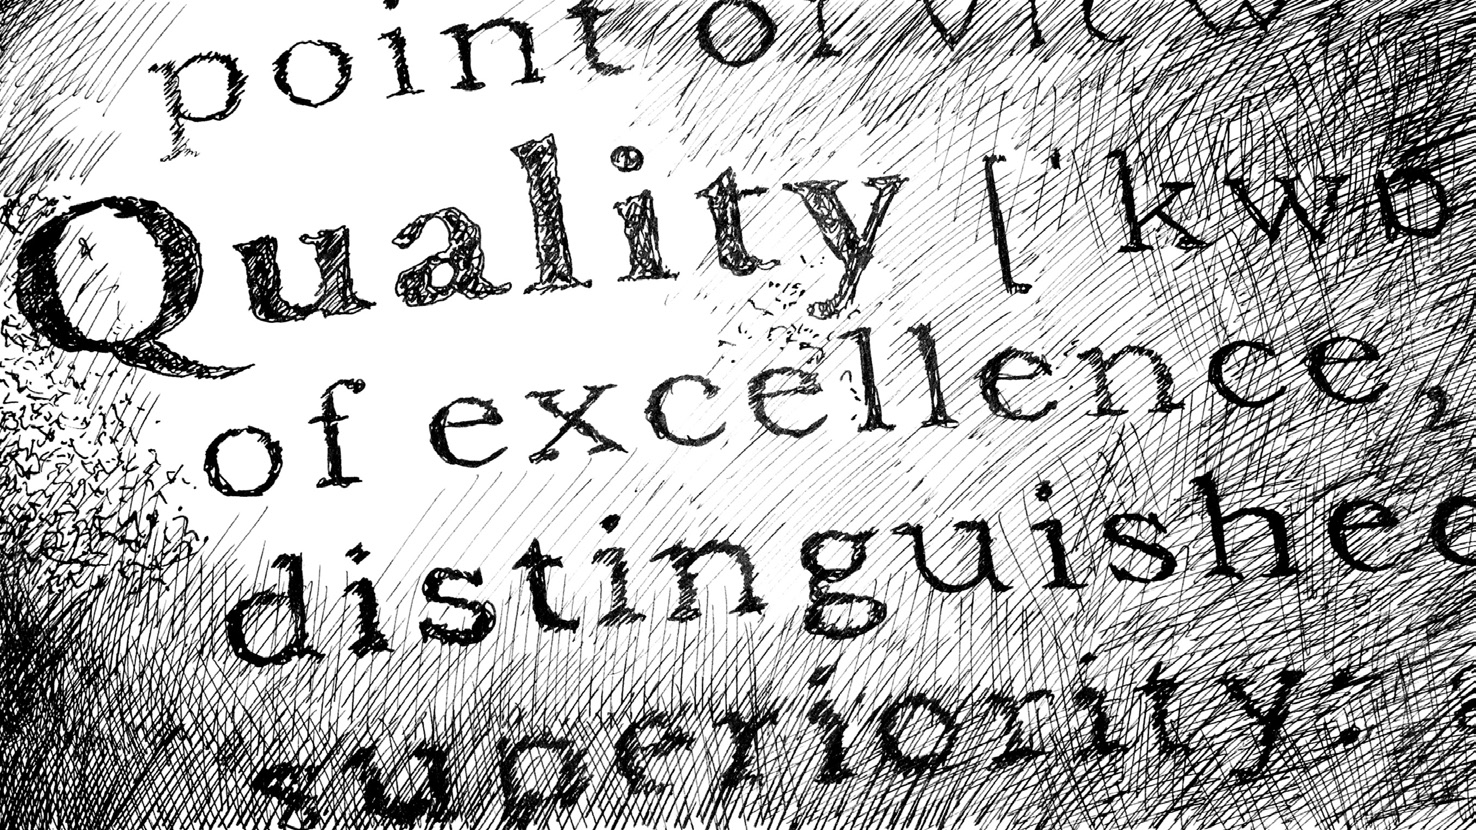 In einer Art Wörterbuch ist das Wort "Quality" gefettet.